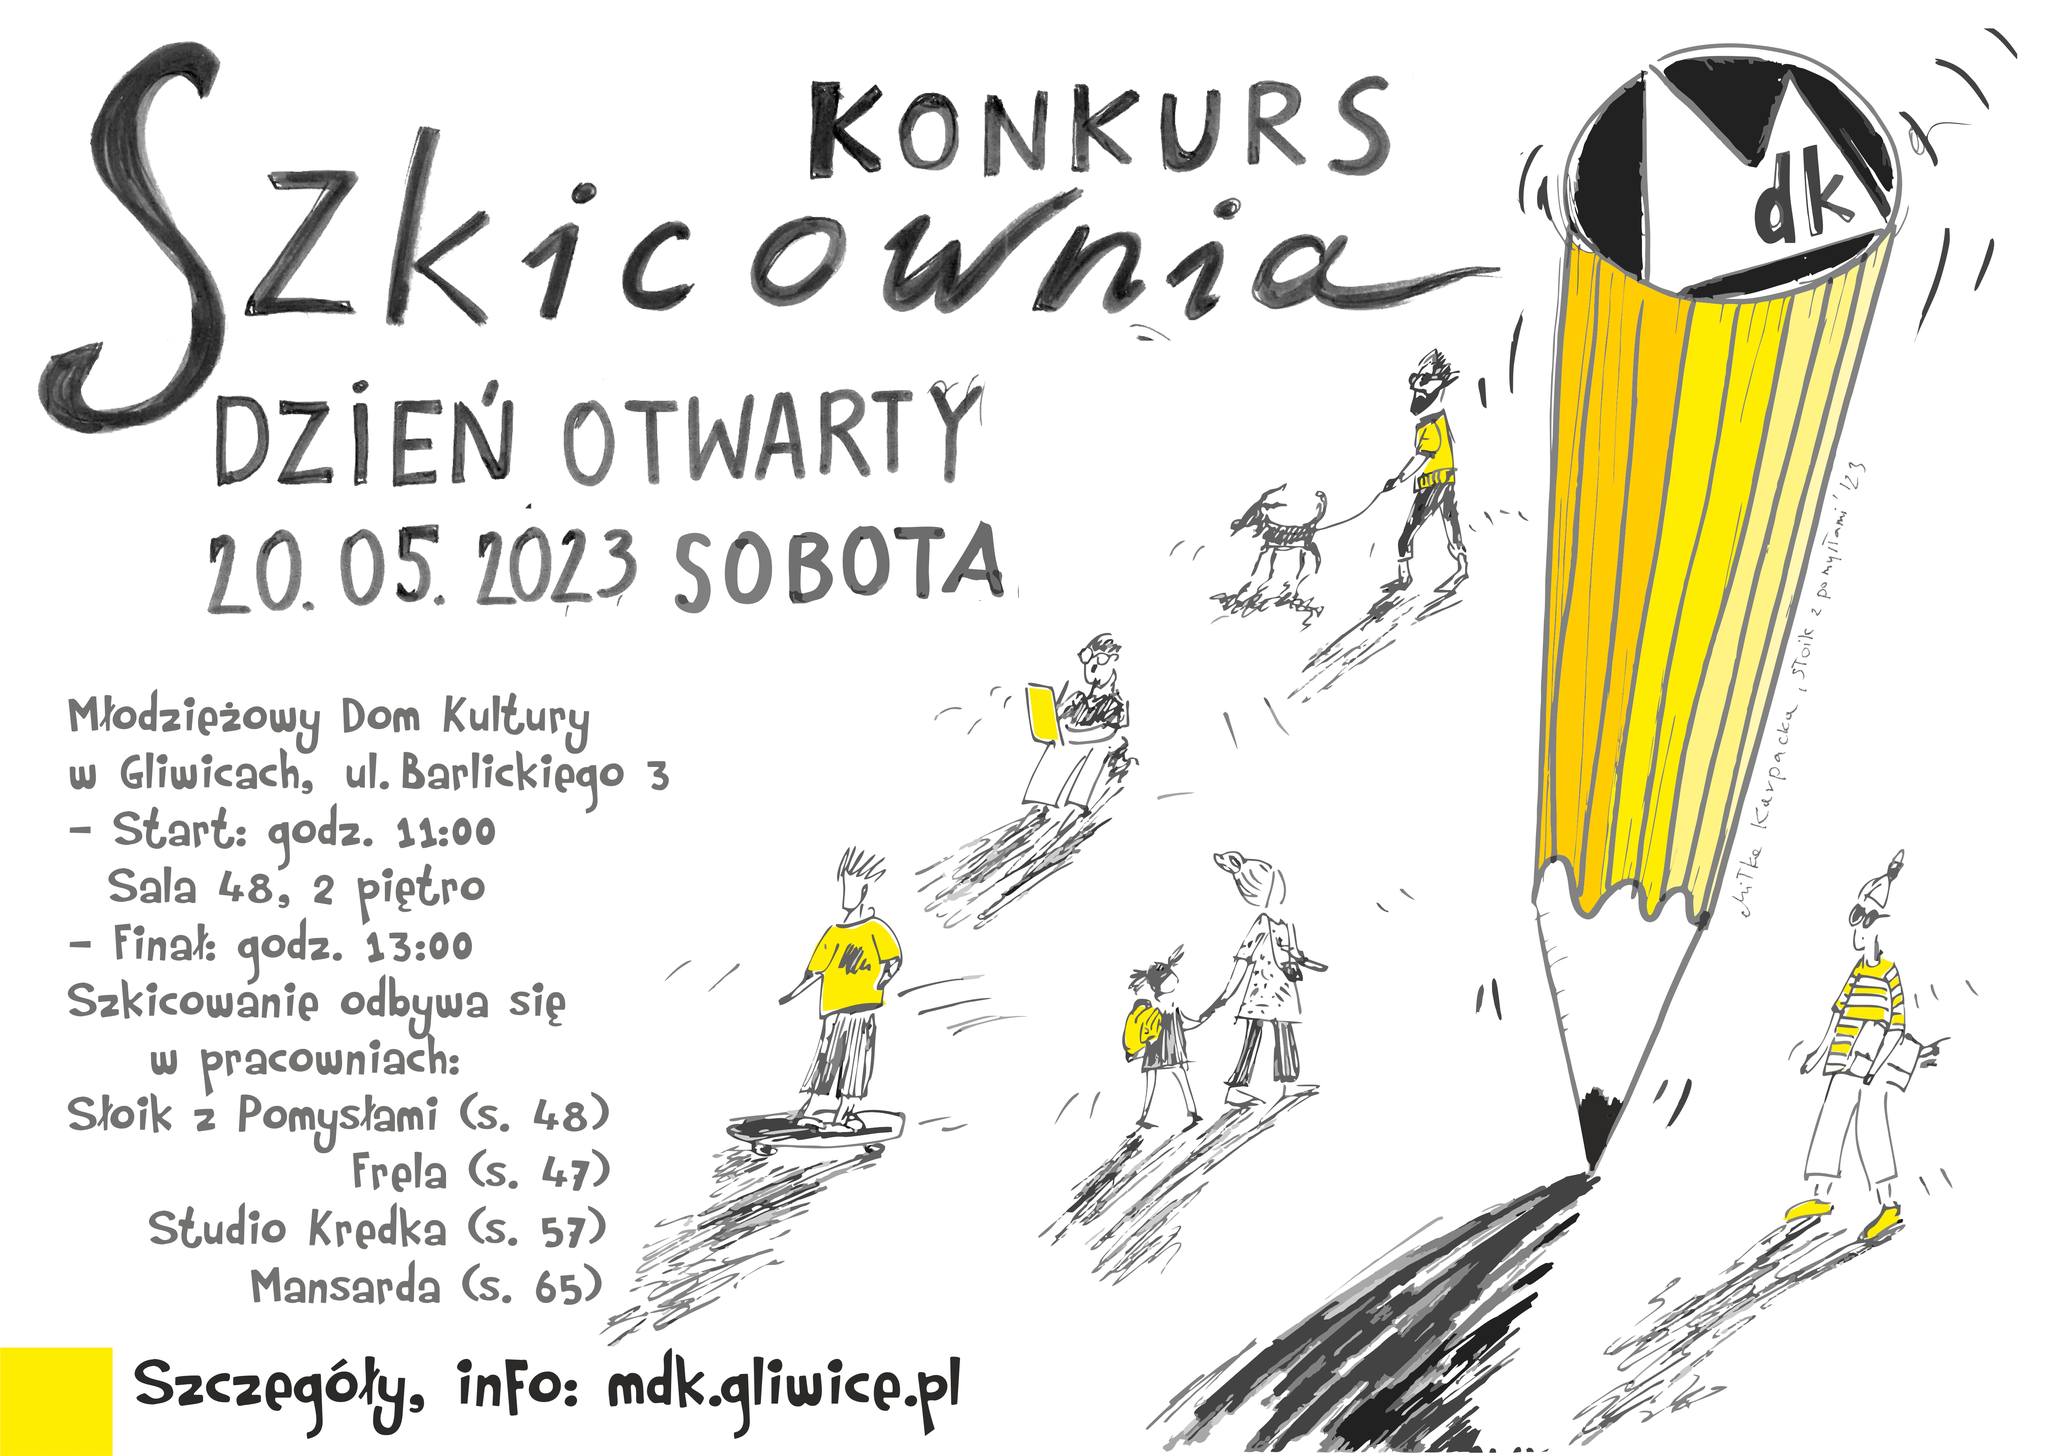 Plakat promujący konkurs "Szkicownia"